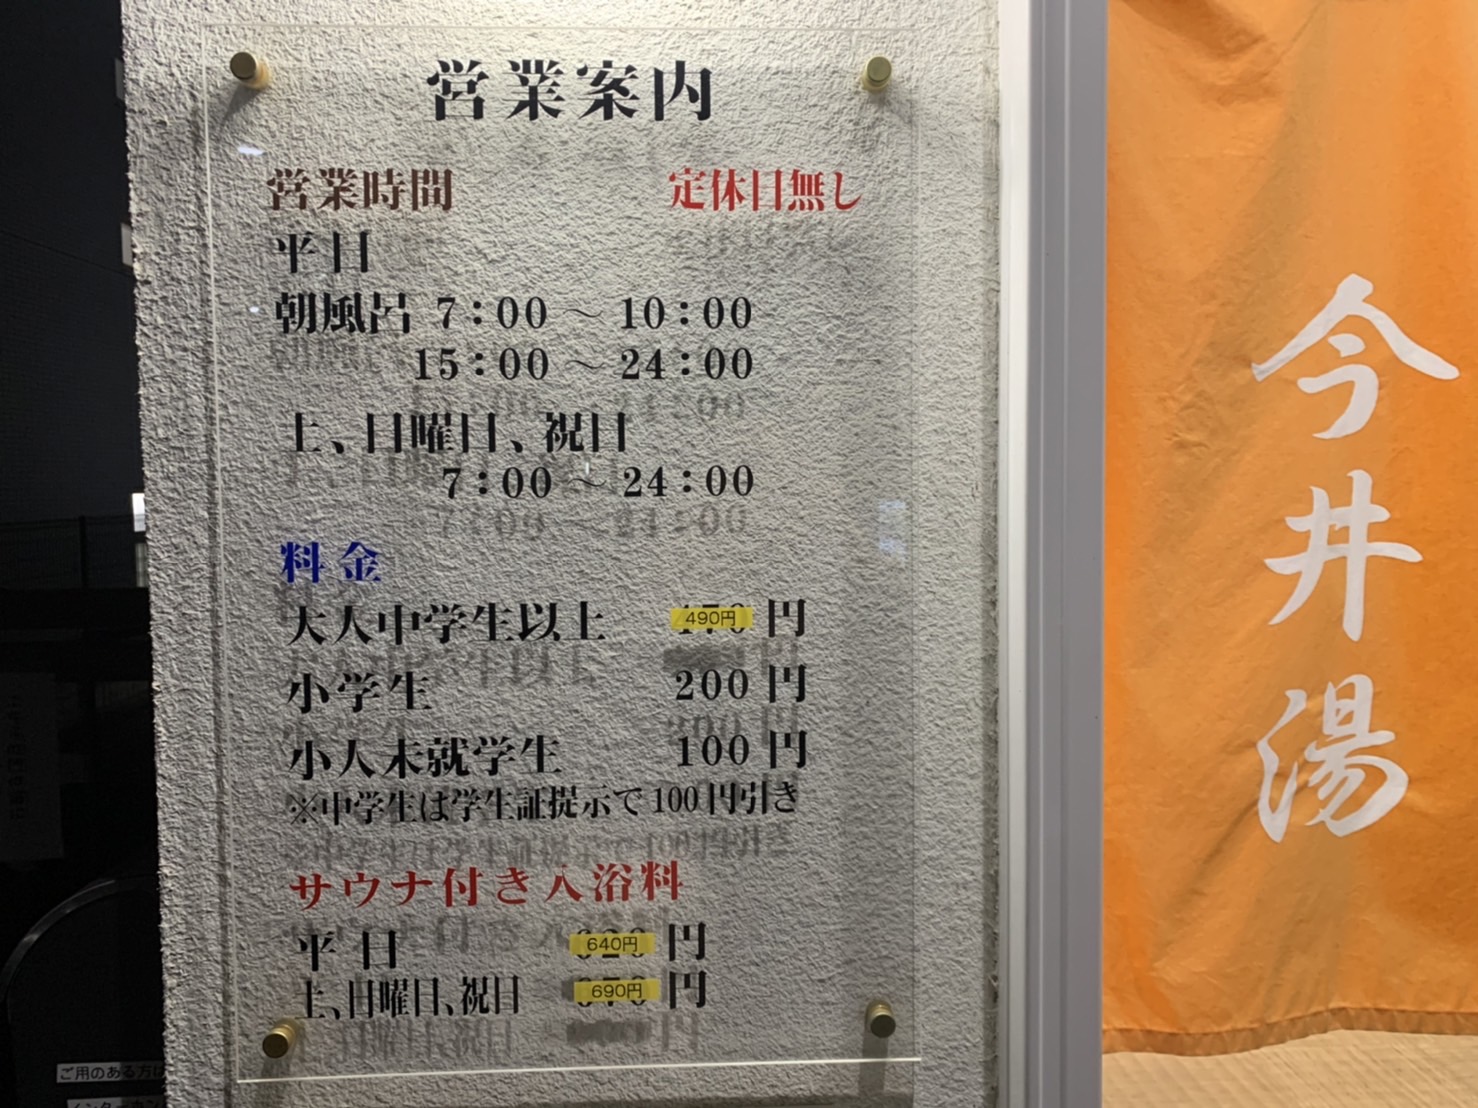 中学生は学生証提示で100円引きです。